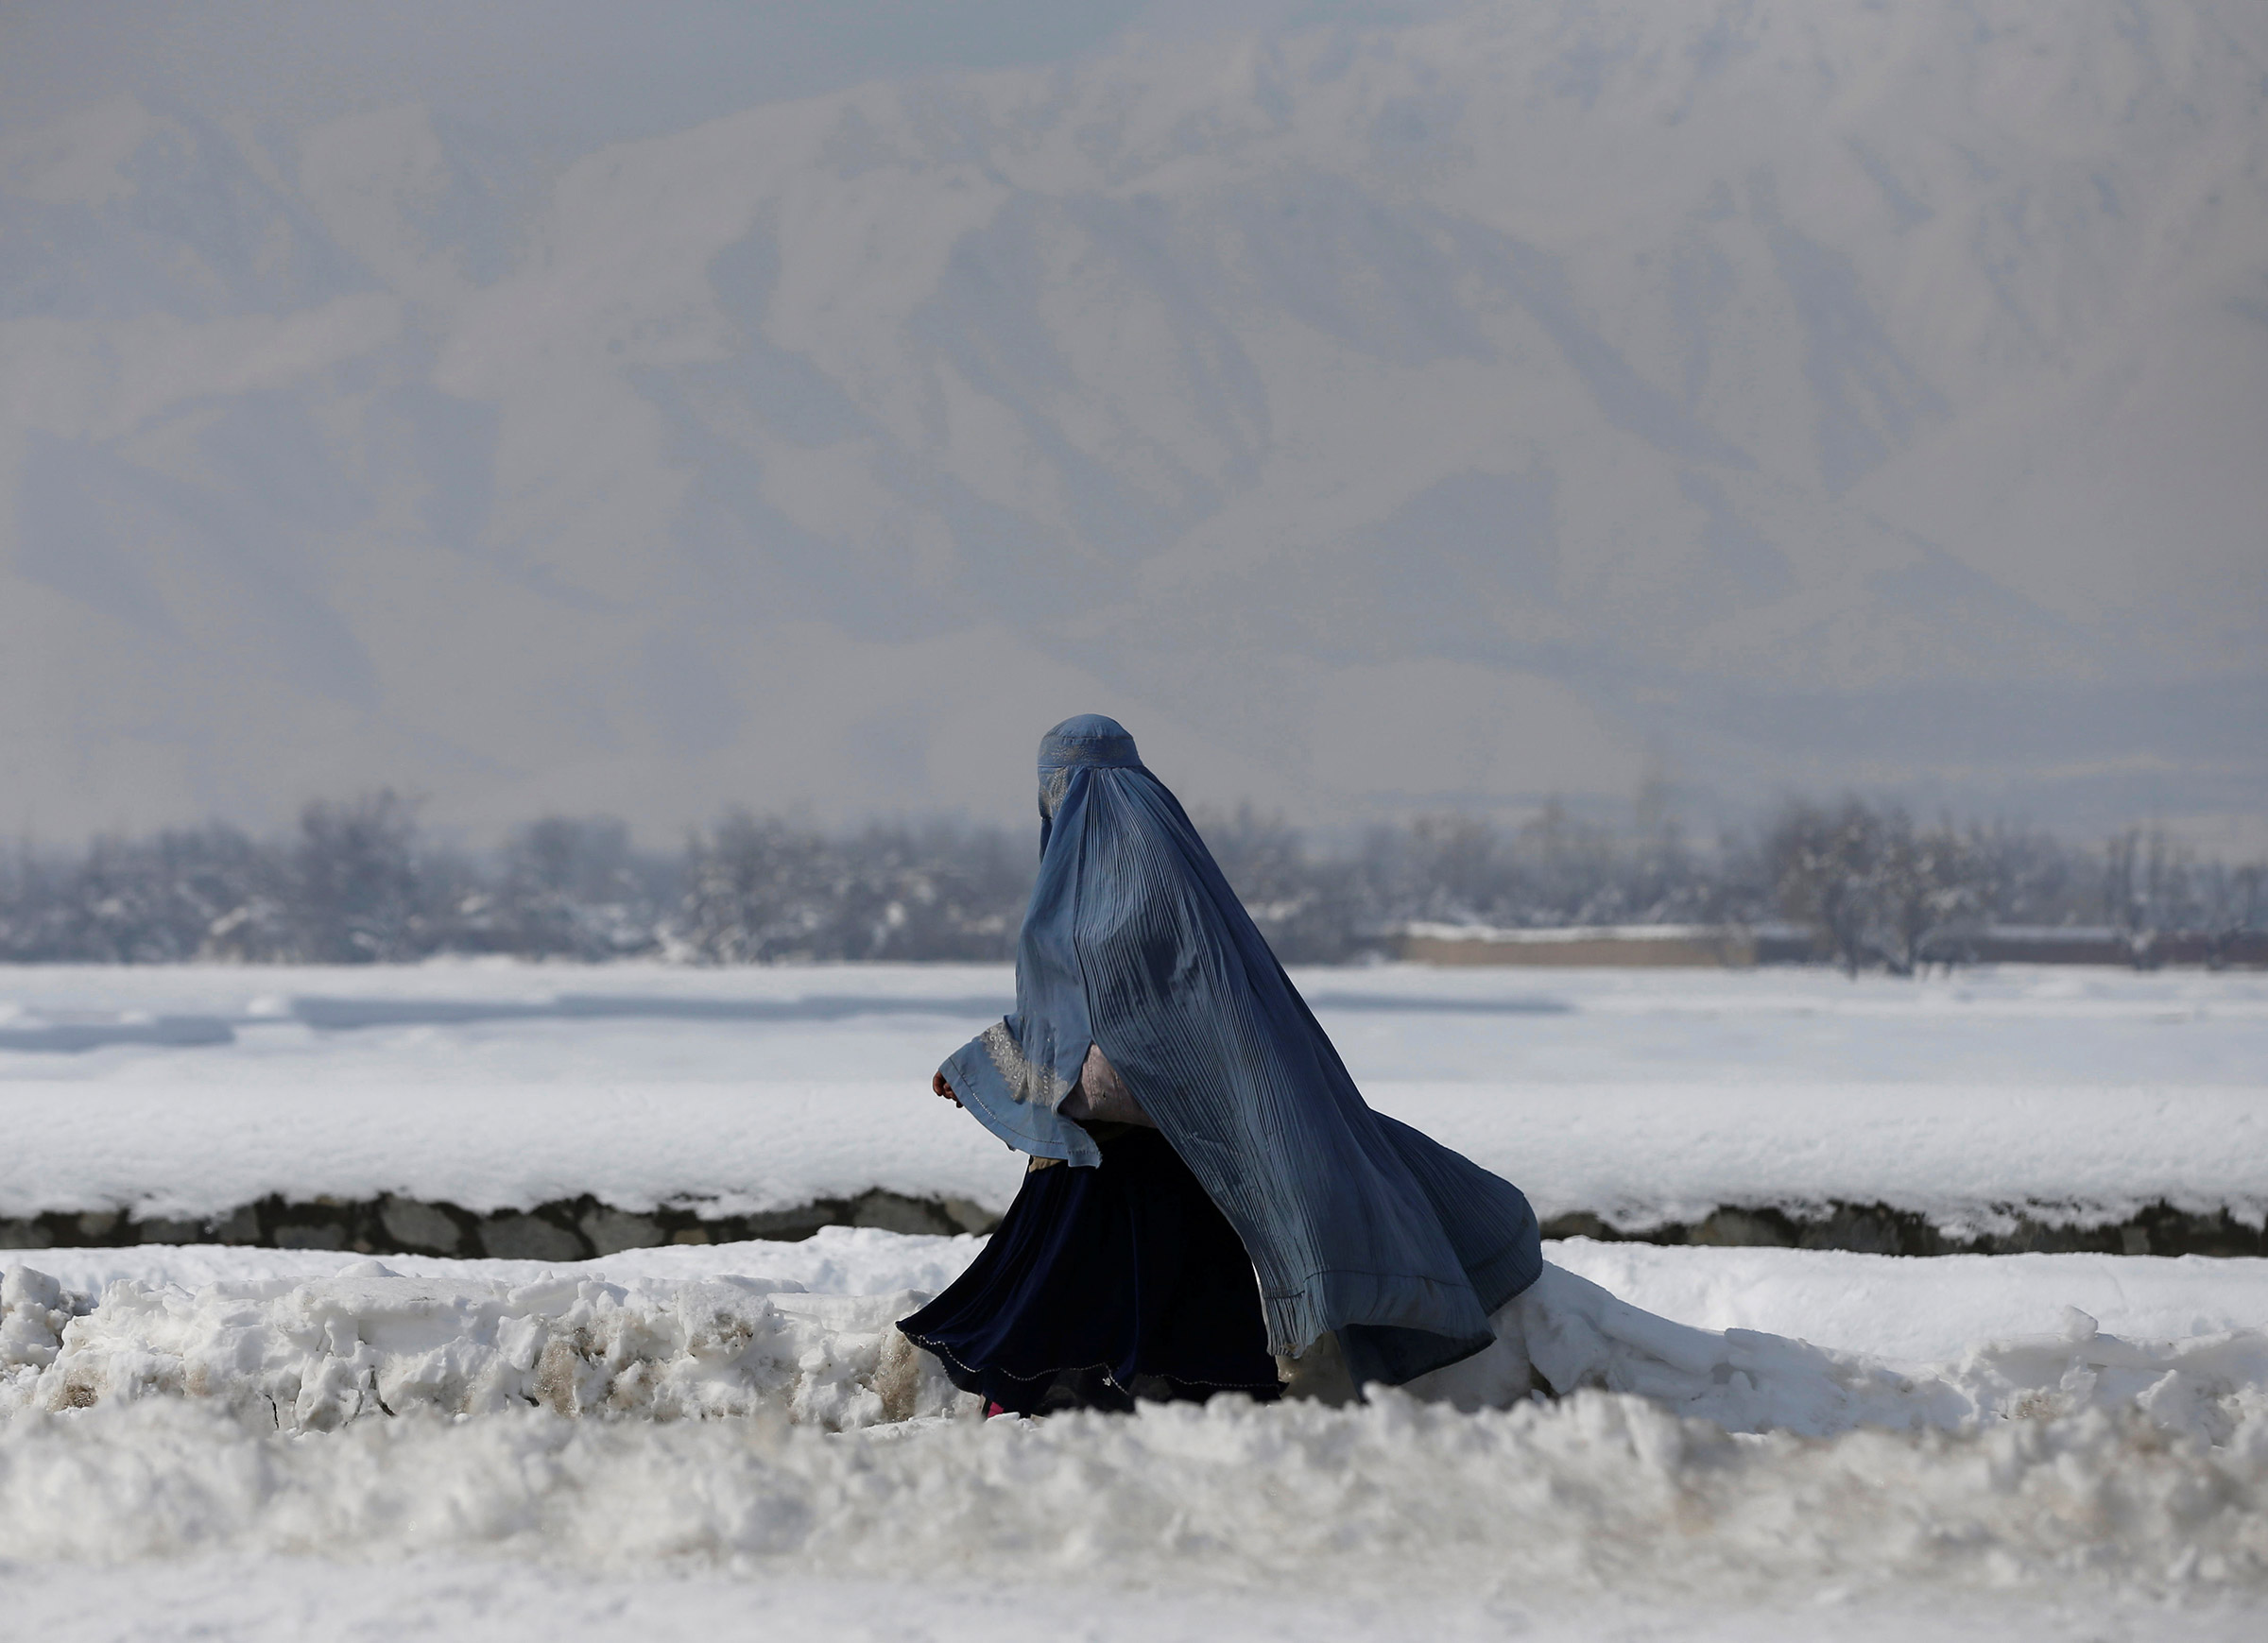 7 февраля. Женщина на улице Кабула. Афганистан
&nbsp;
